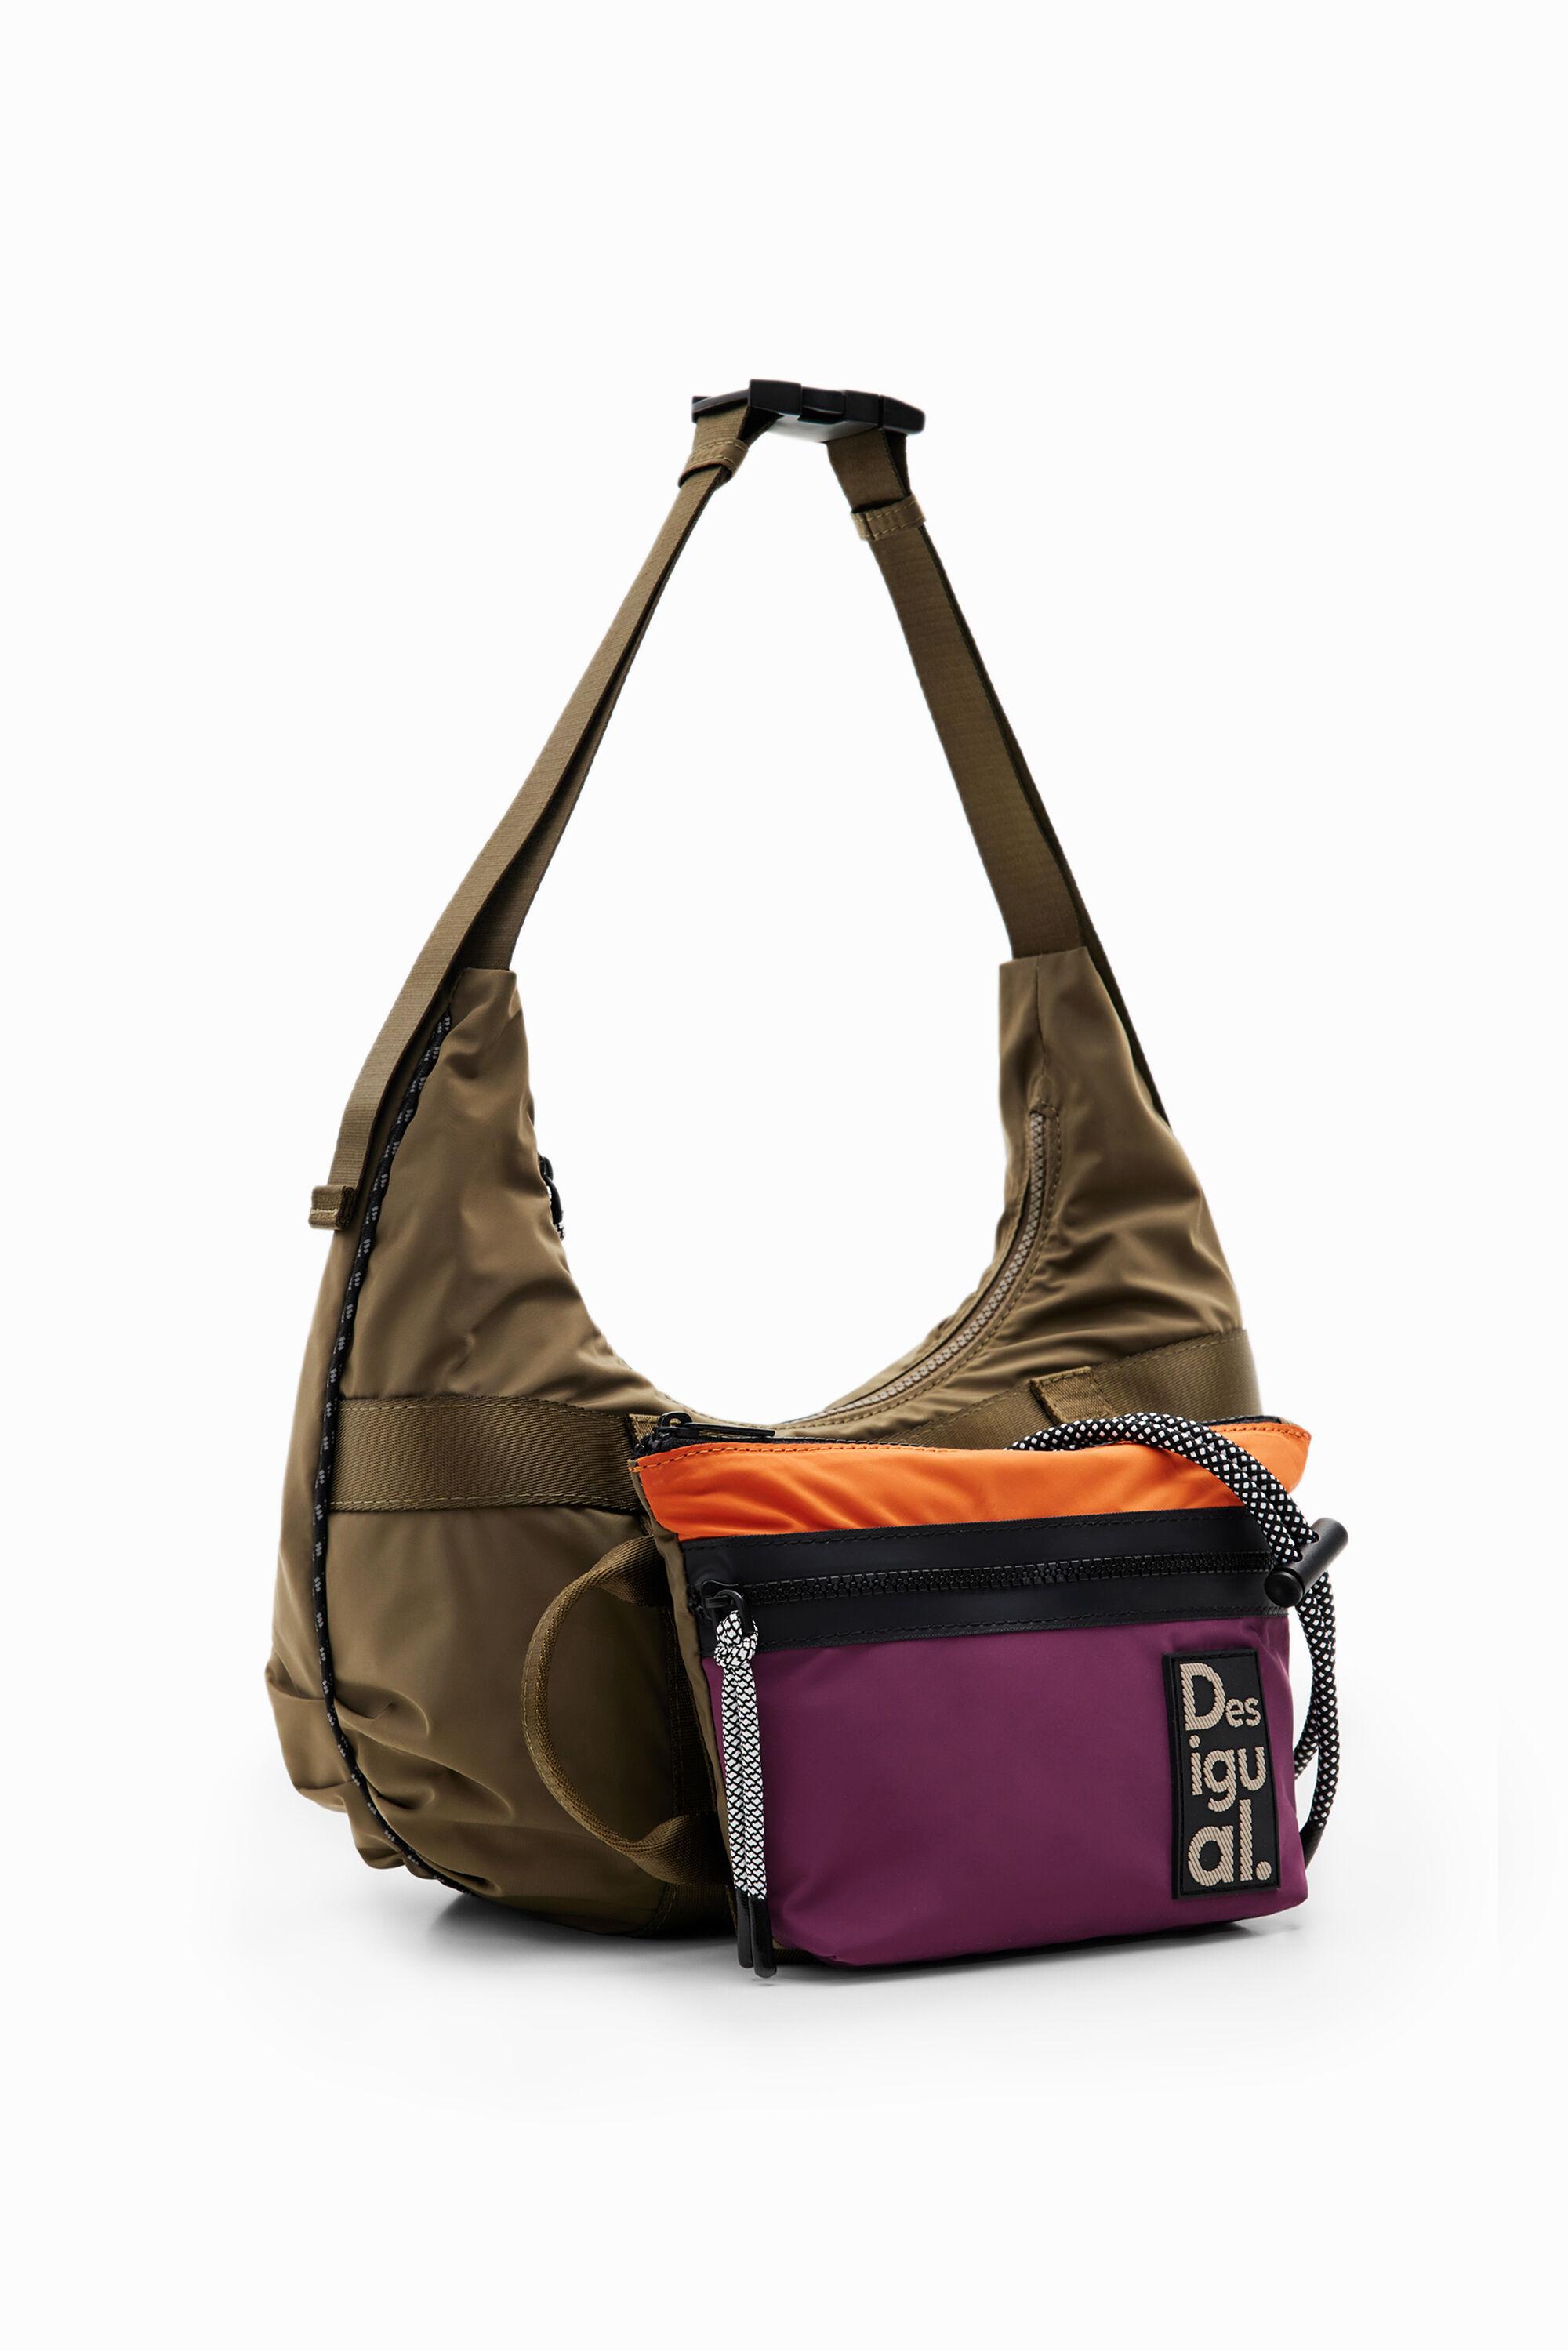 Desigual Small Multi-position Bag in Purple | Lyst